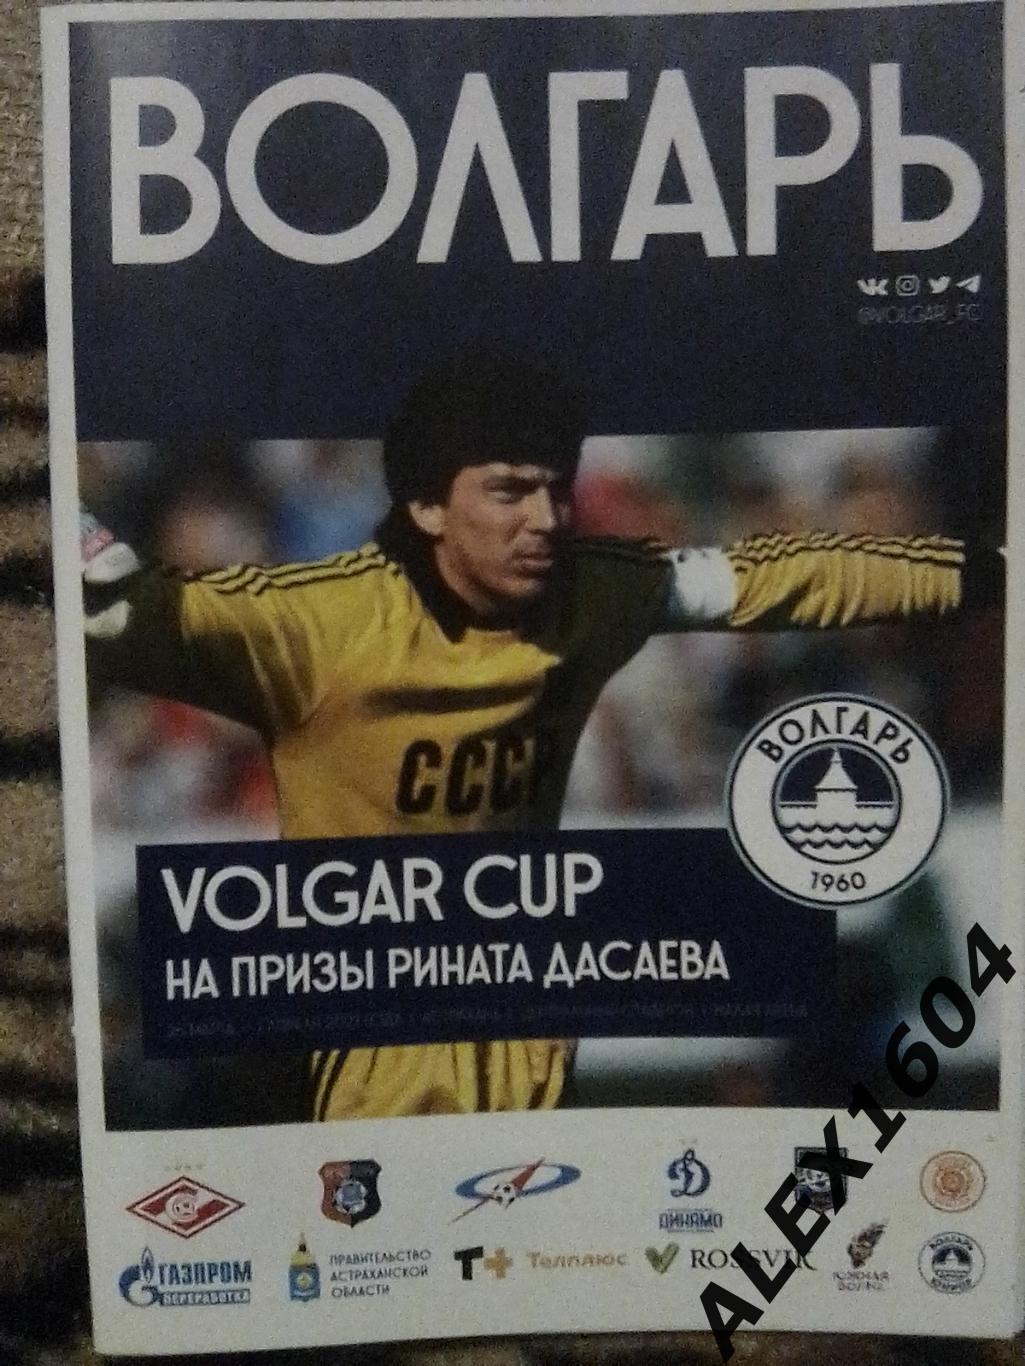 Volgar Cup на призы Р.Дасаева 26.03--01.04.2021 г